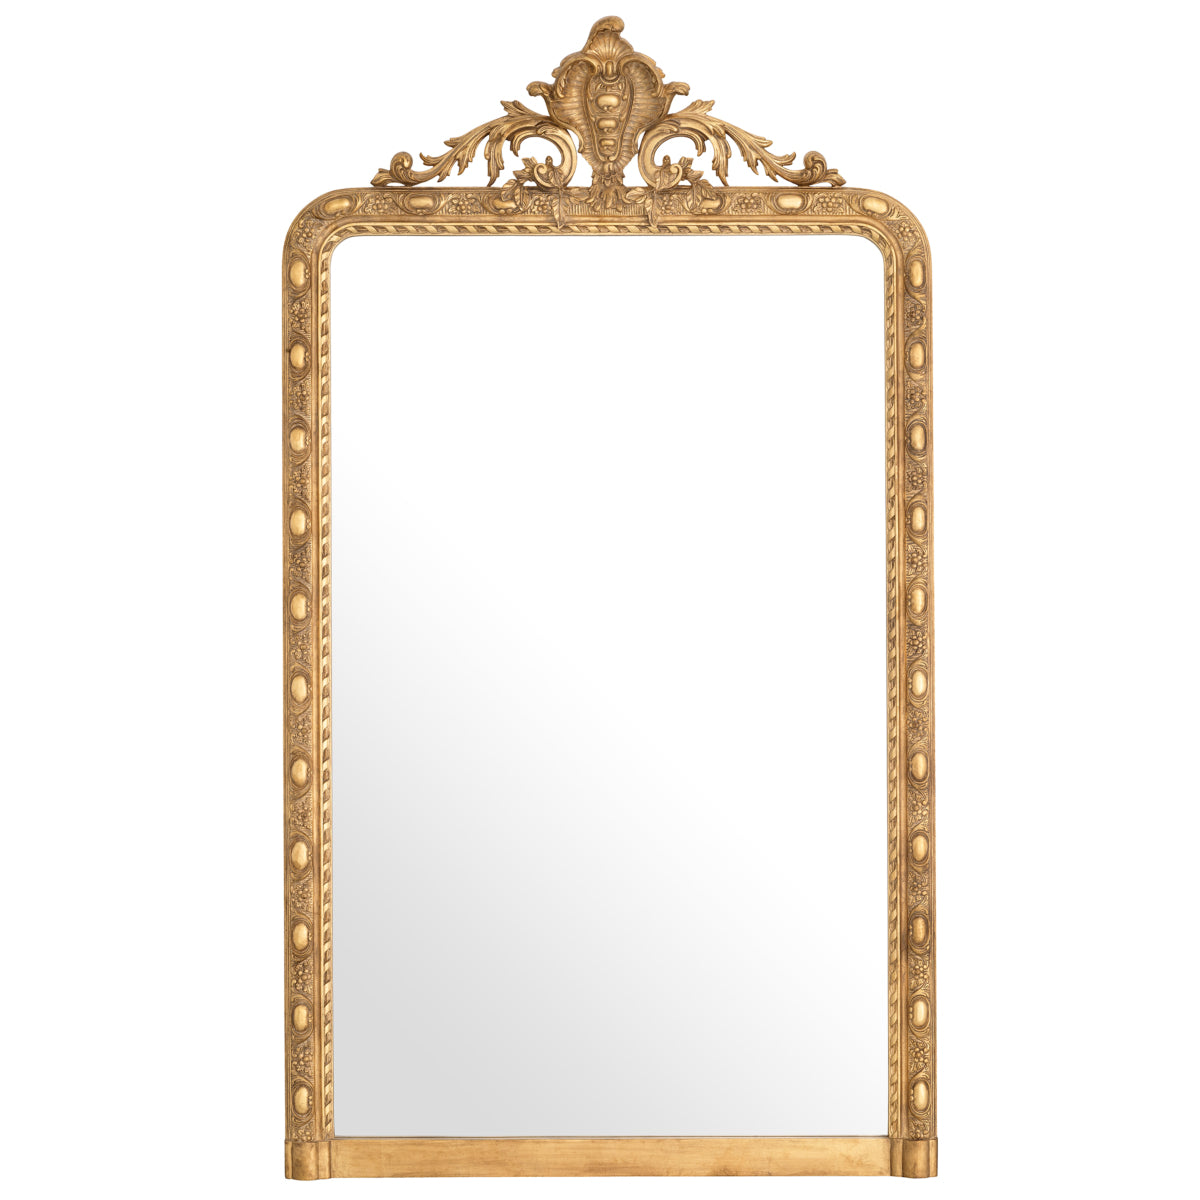 Mirror Eichholtz Ludovico spiegel